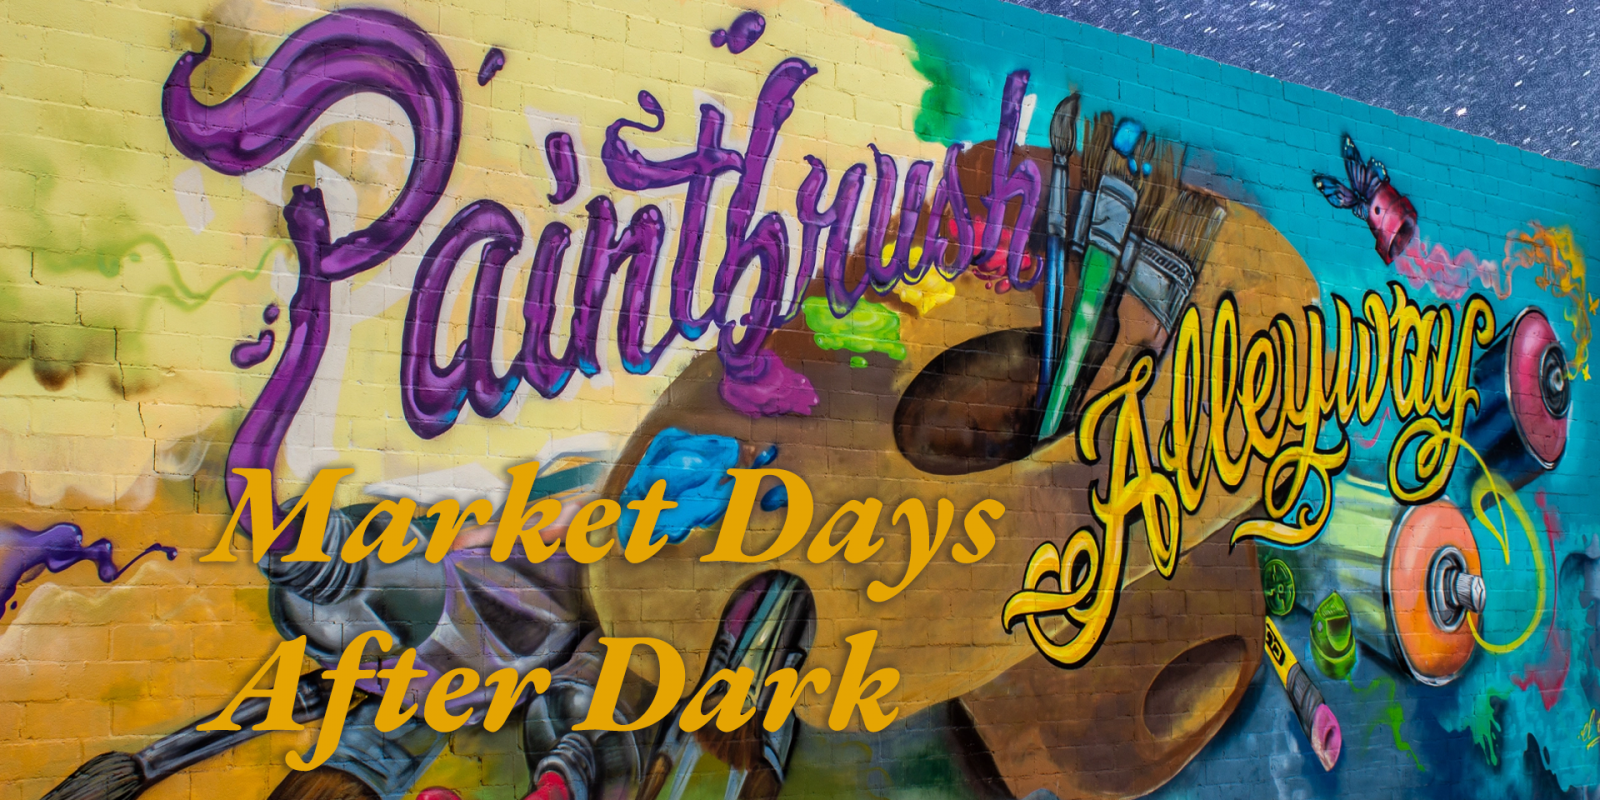 Paintbrush Alley Market Days After Dark